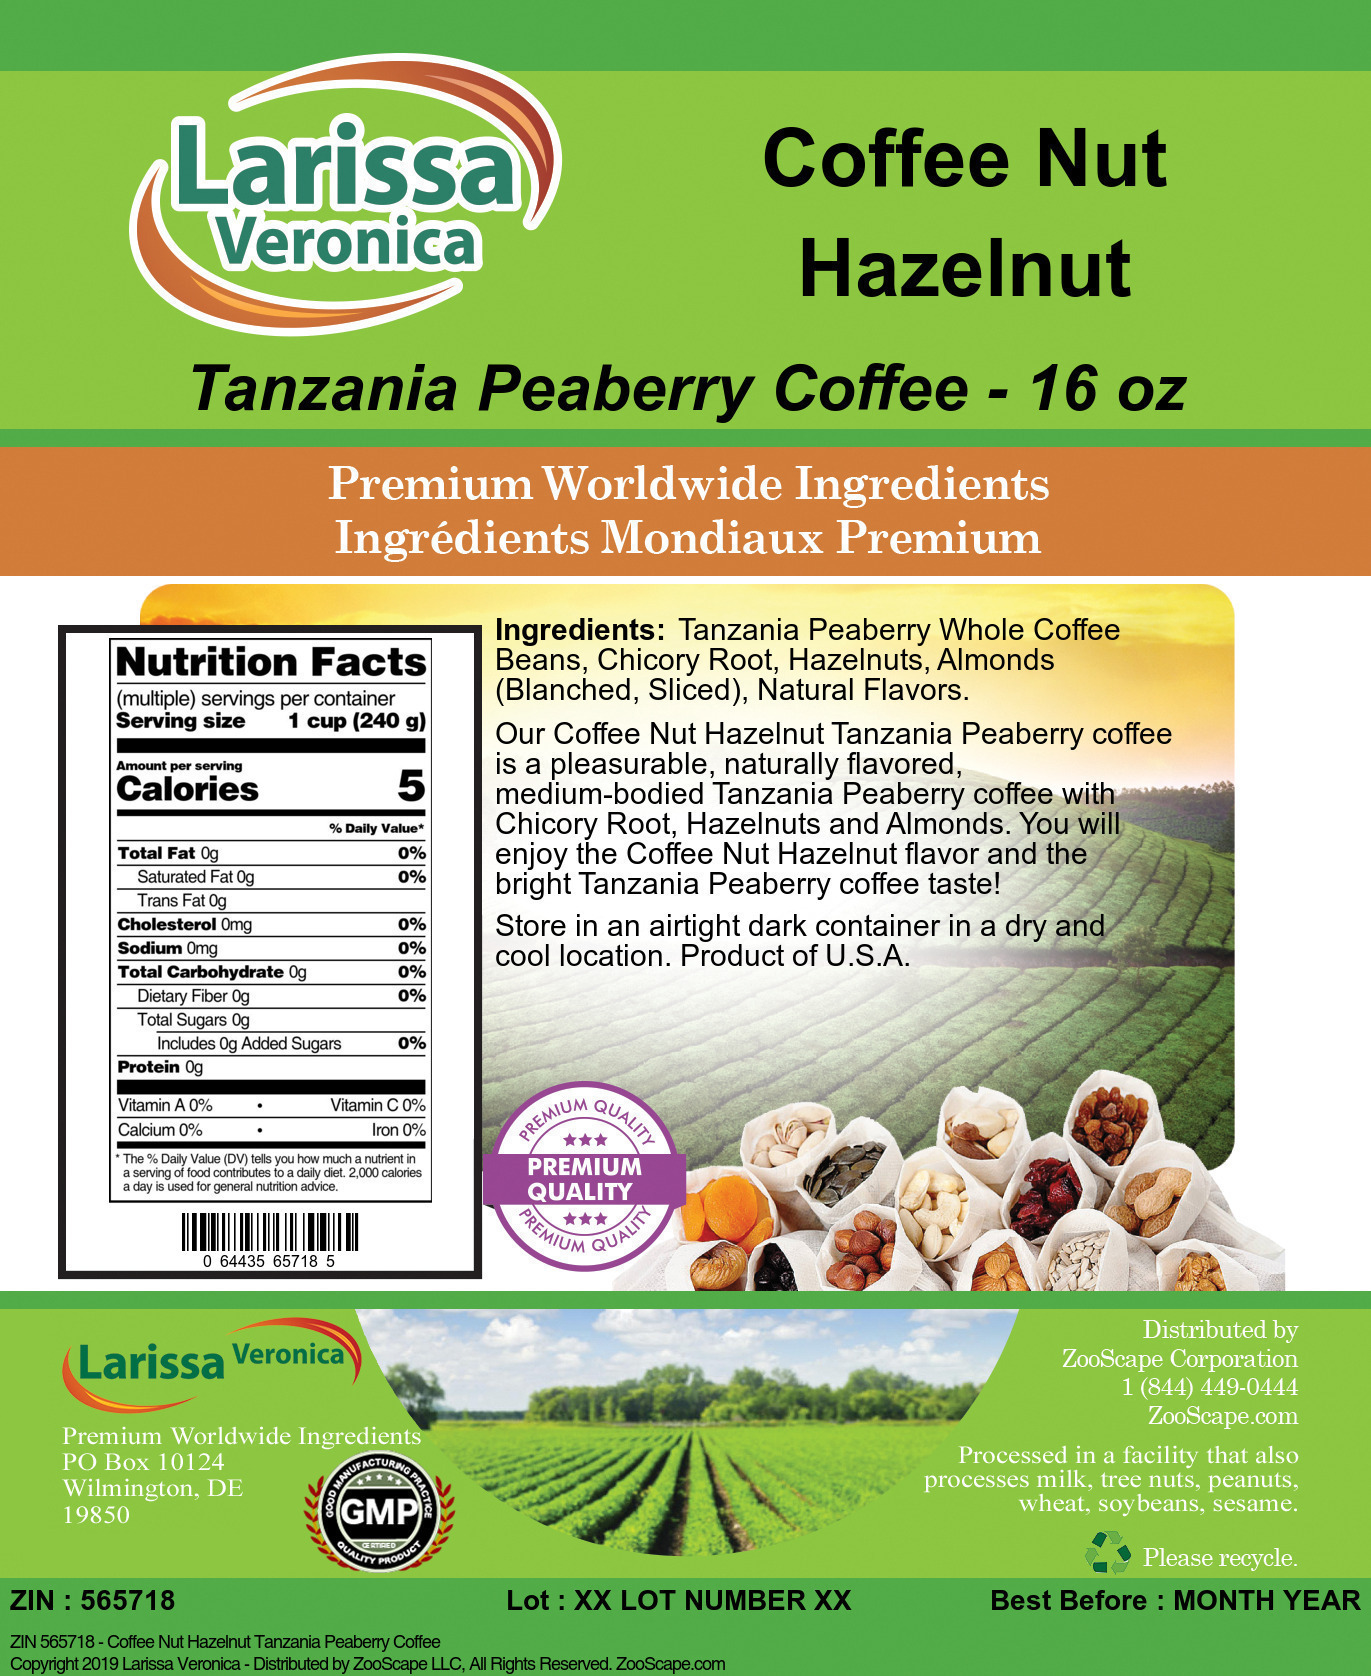 Coffee Nut Hazelnut Tanzania Peaberry Coffee - Label